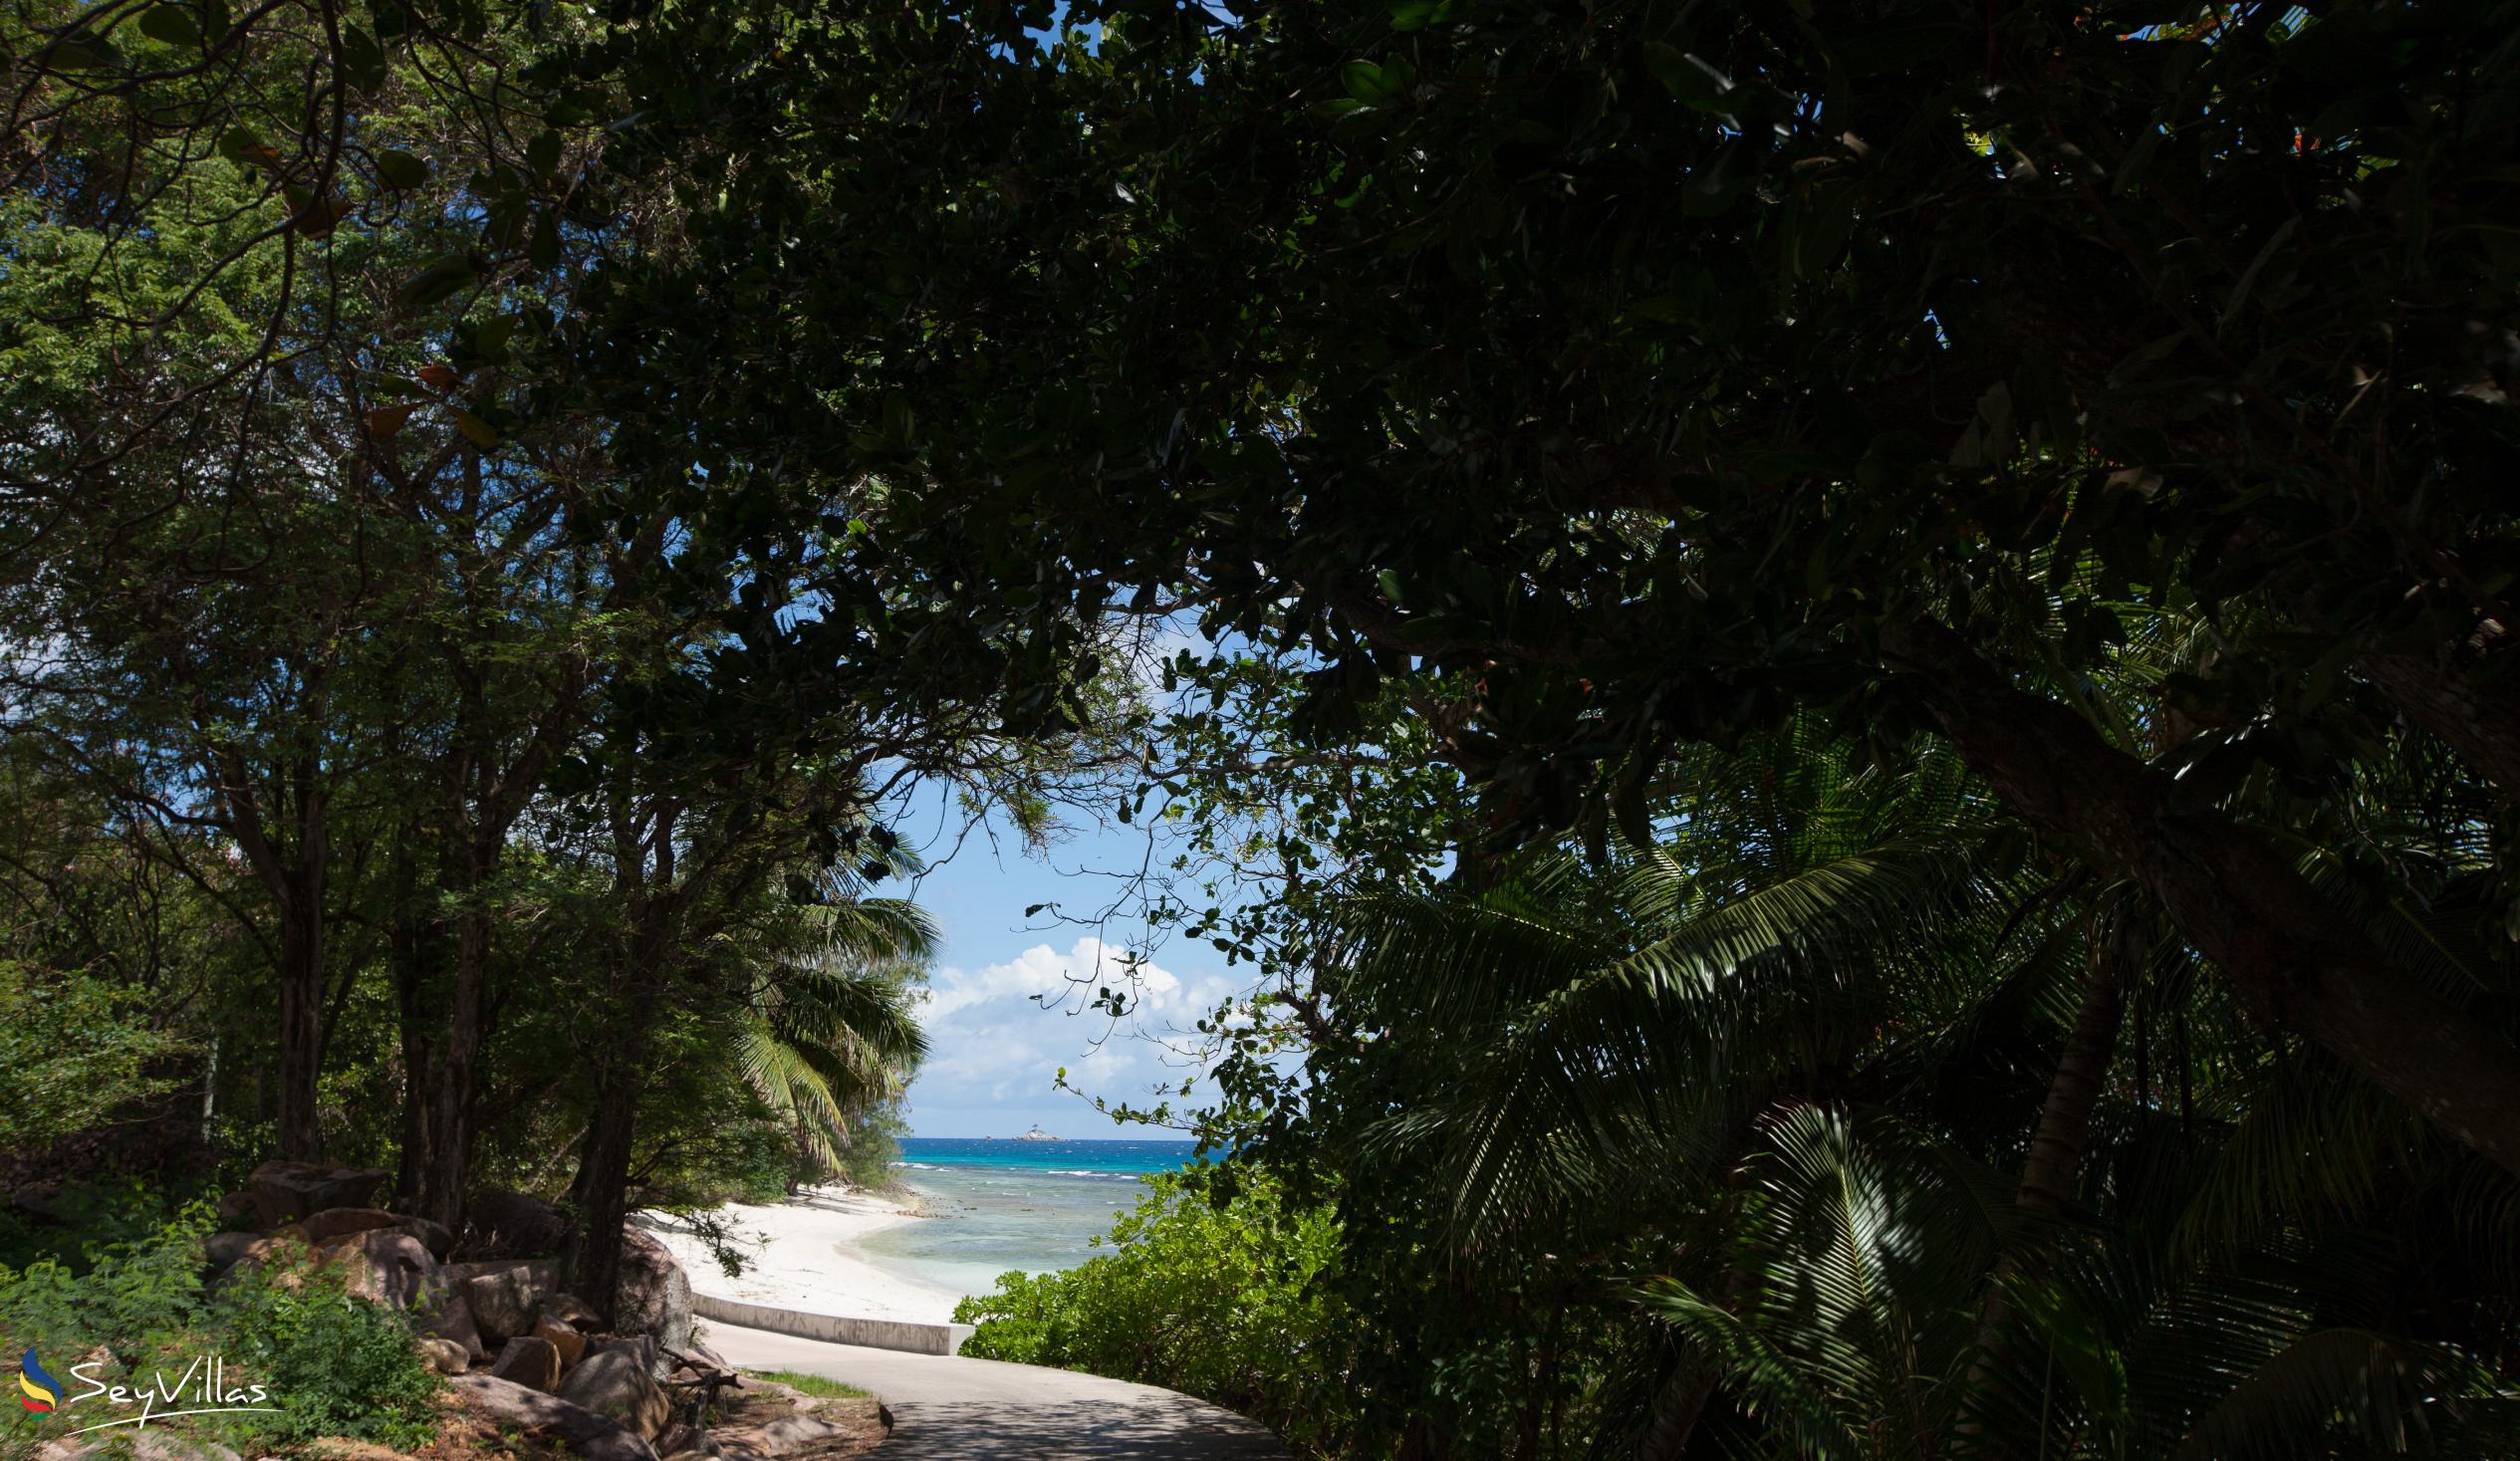 Foto 22: Secret Villa - Posizione - La Digue (Seychelles)